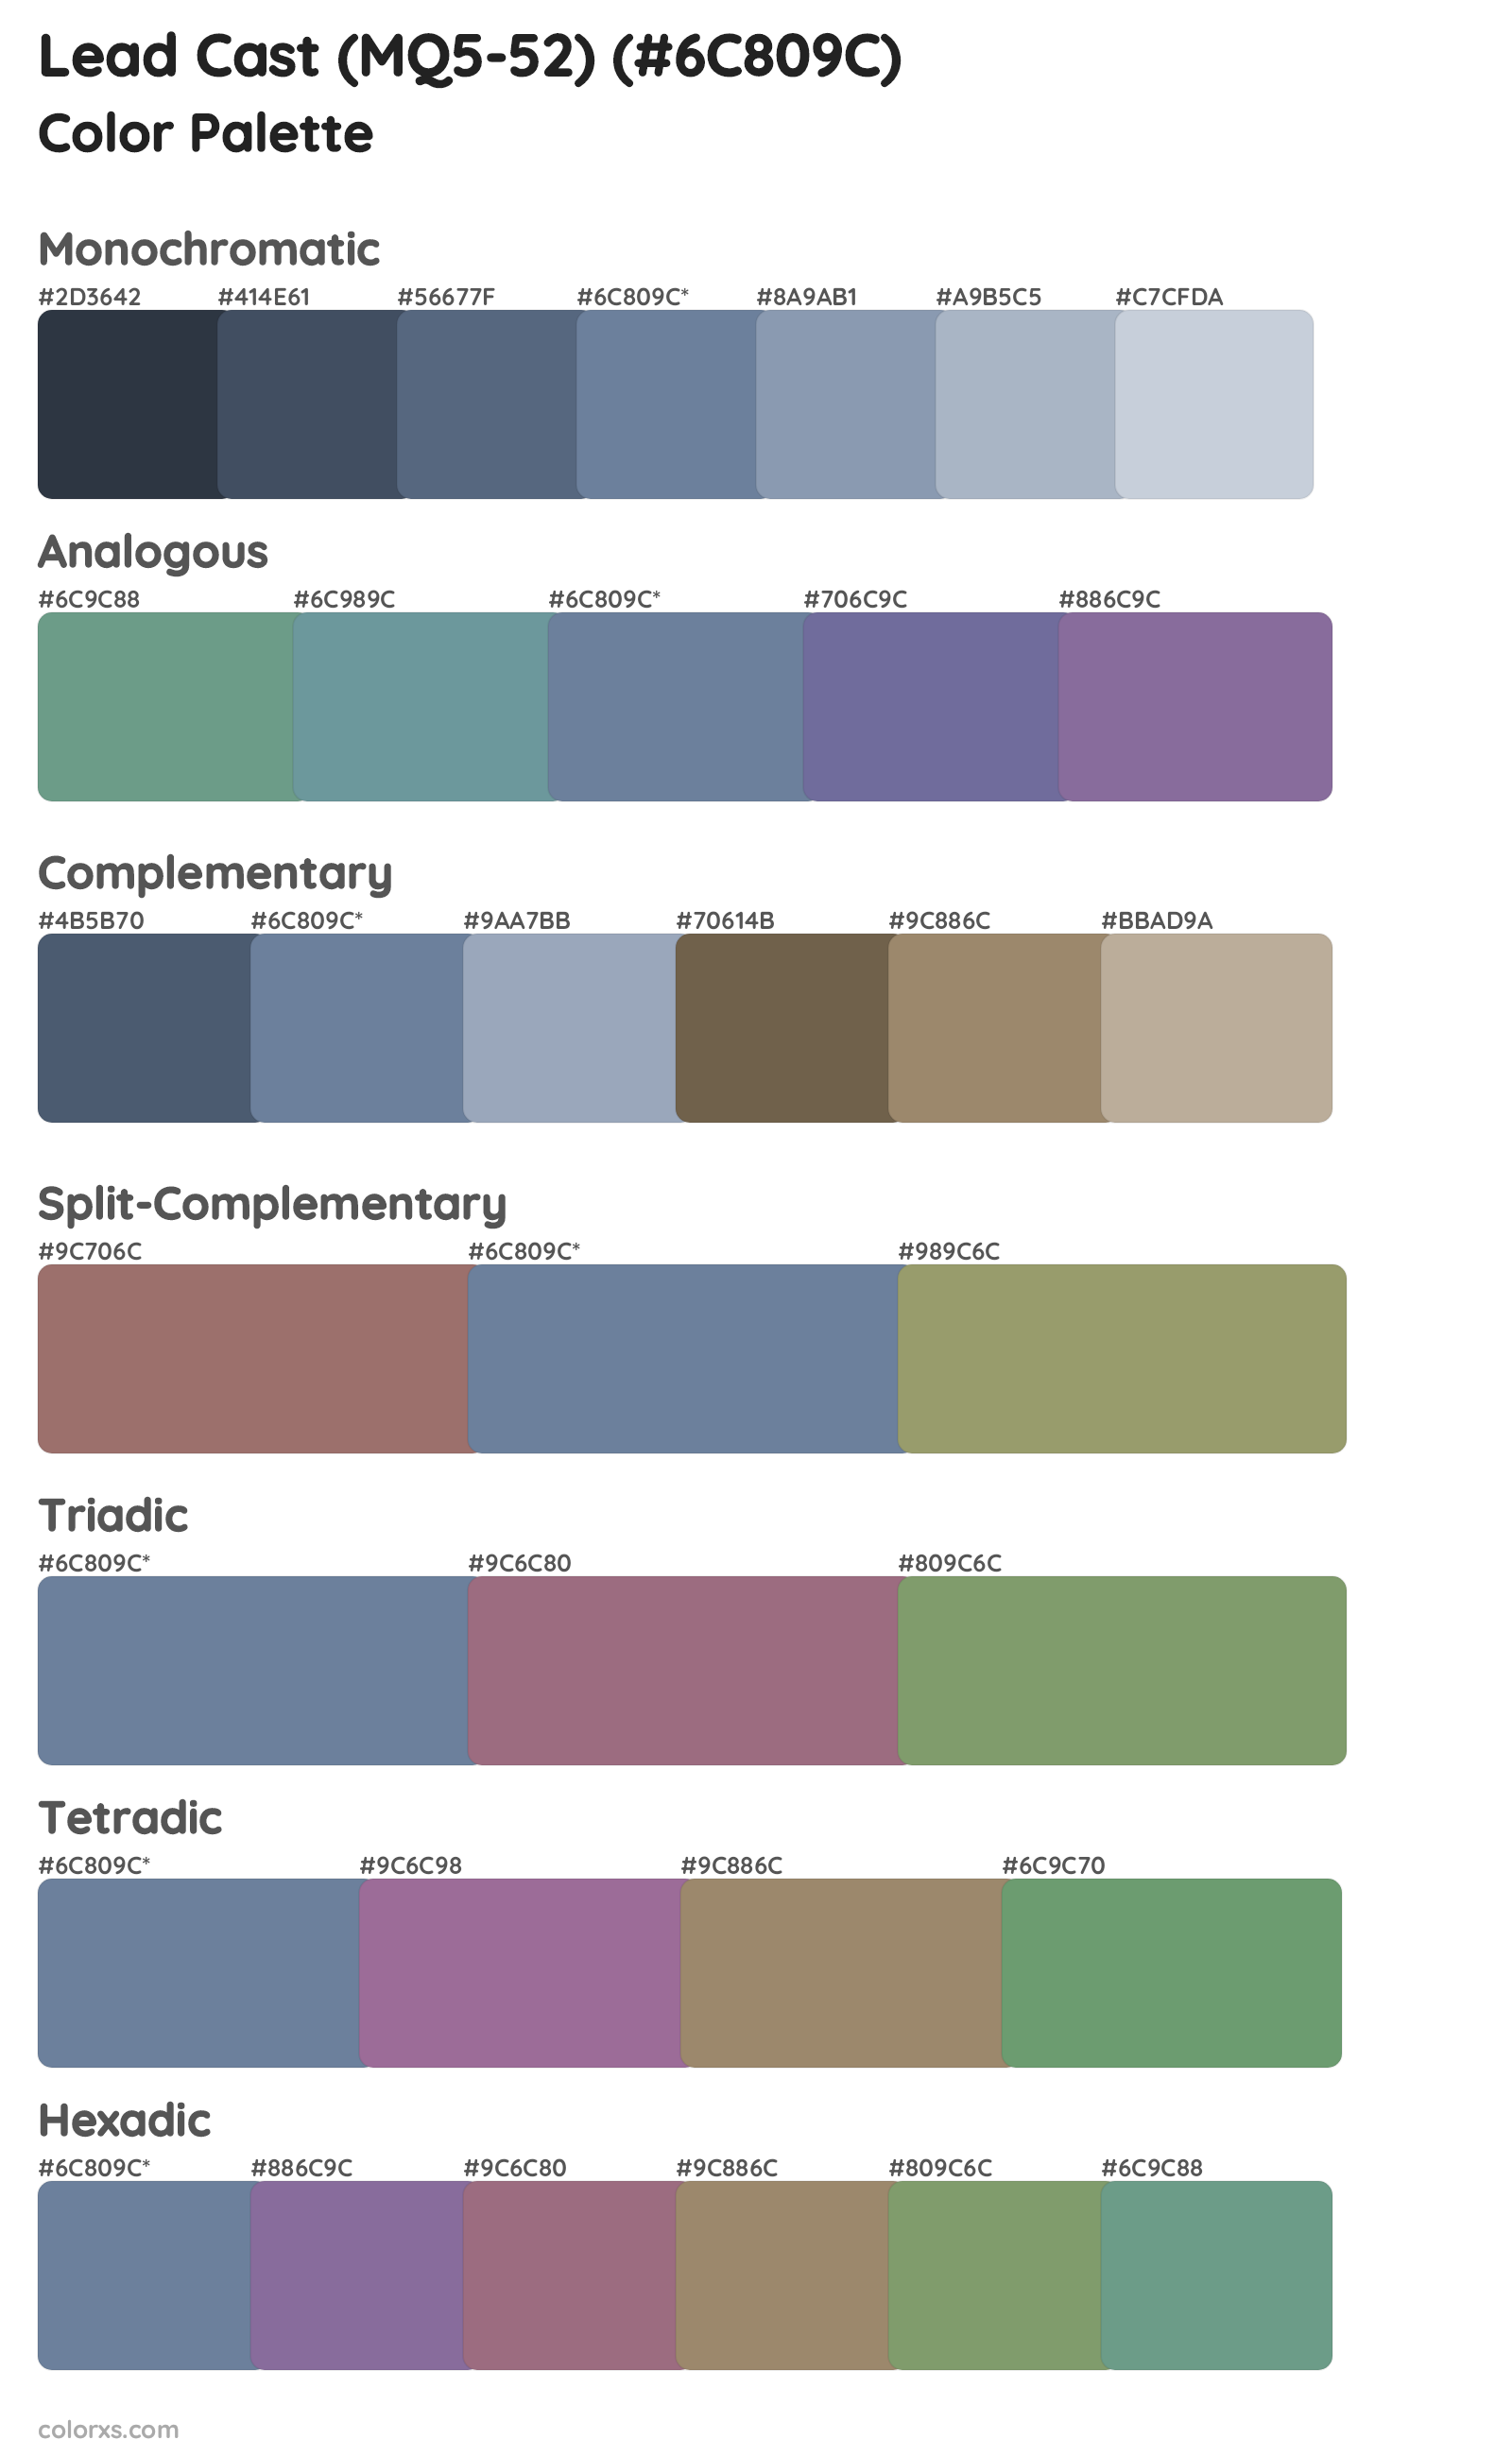 Lead Cast (MQ5-52) Color Scheme Palettes